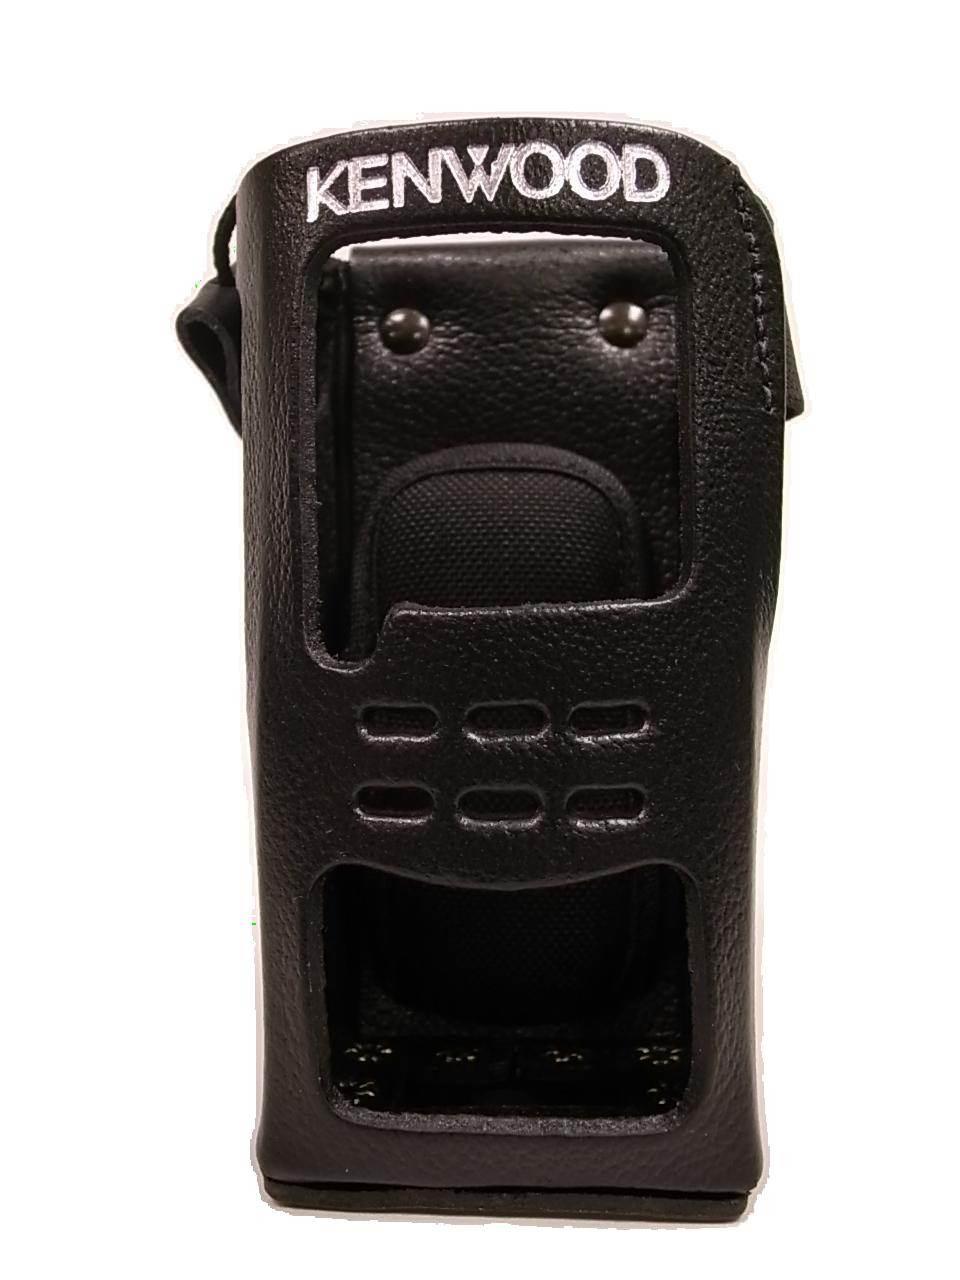 kenwood KLH-158PC